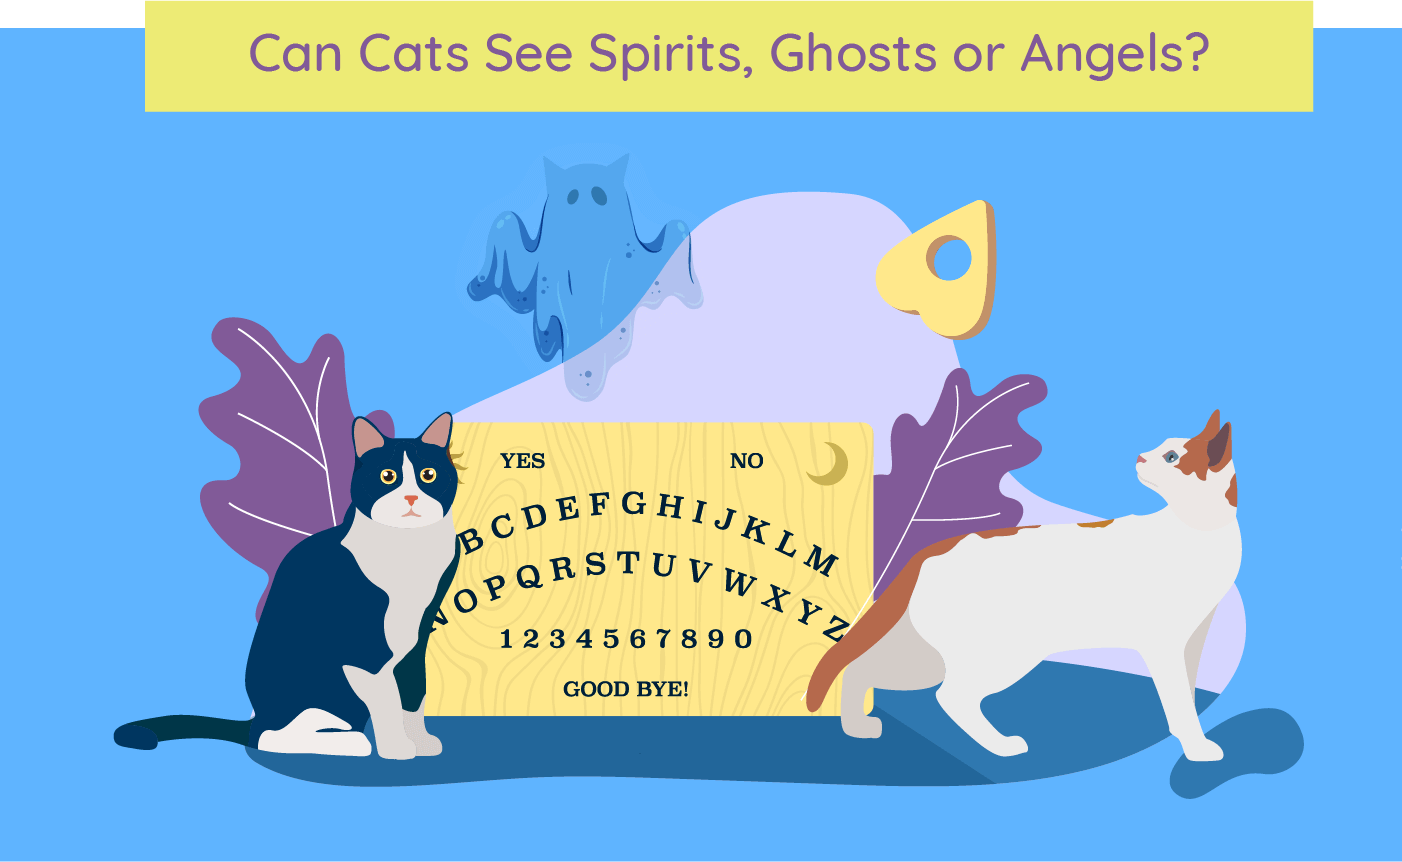 Afbeelding met de titel 'Can Cats See Spirits, Ghosts, and Angels?' die het geloof onderzoekt dat katten bovennatuurlijke entiteiten kunnen waarnemen.